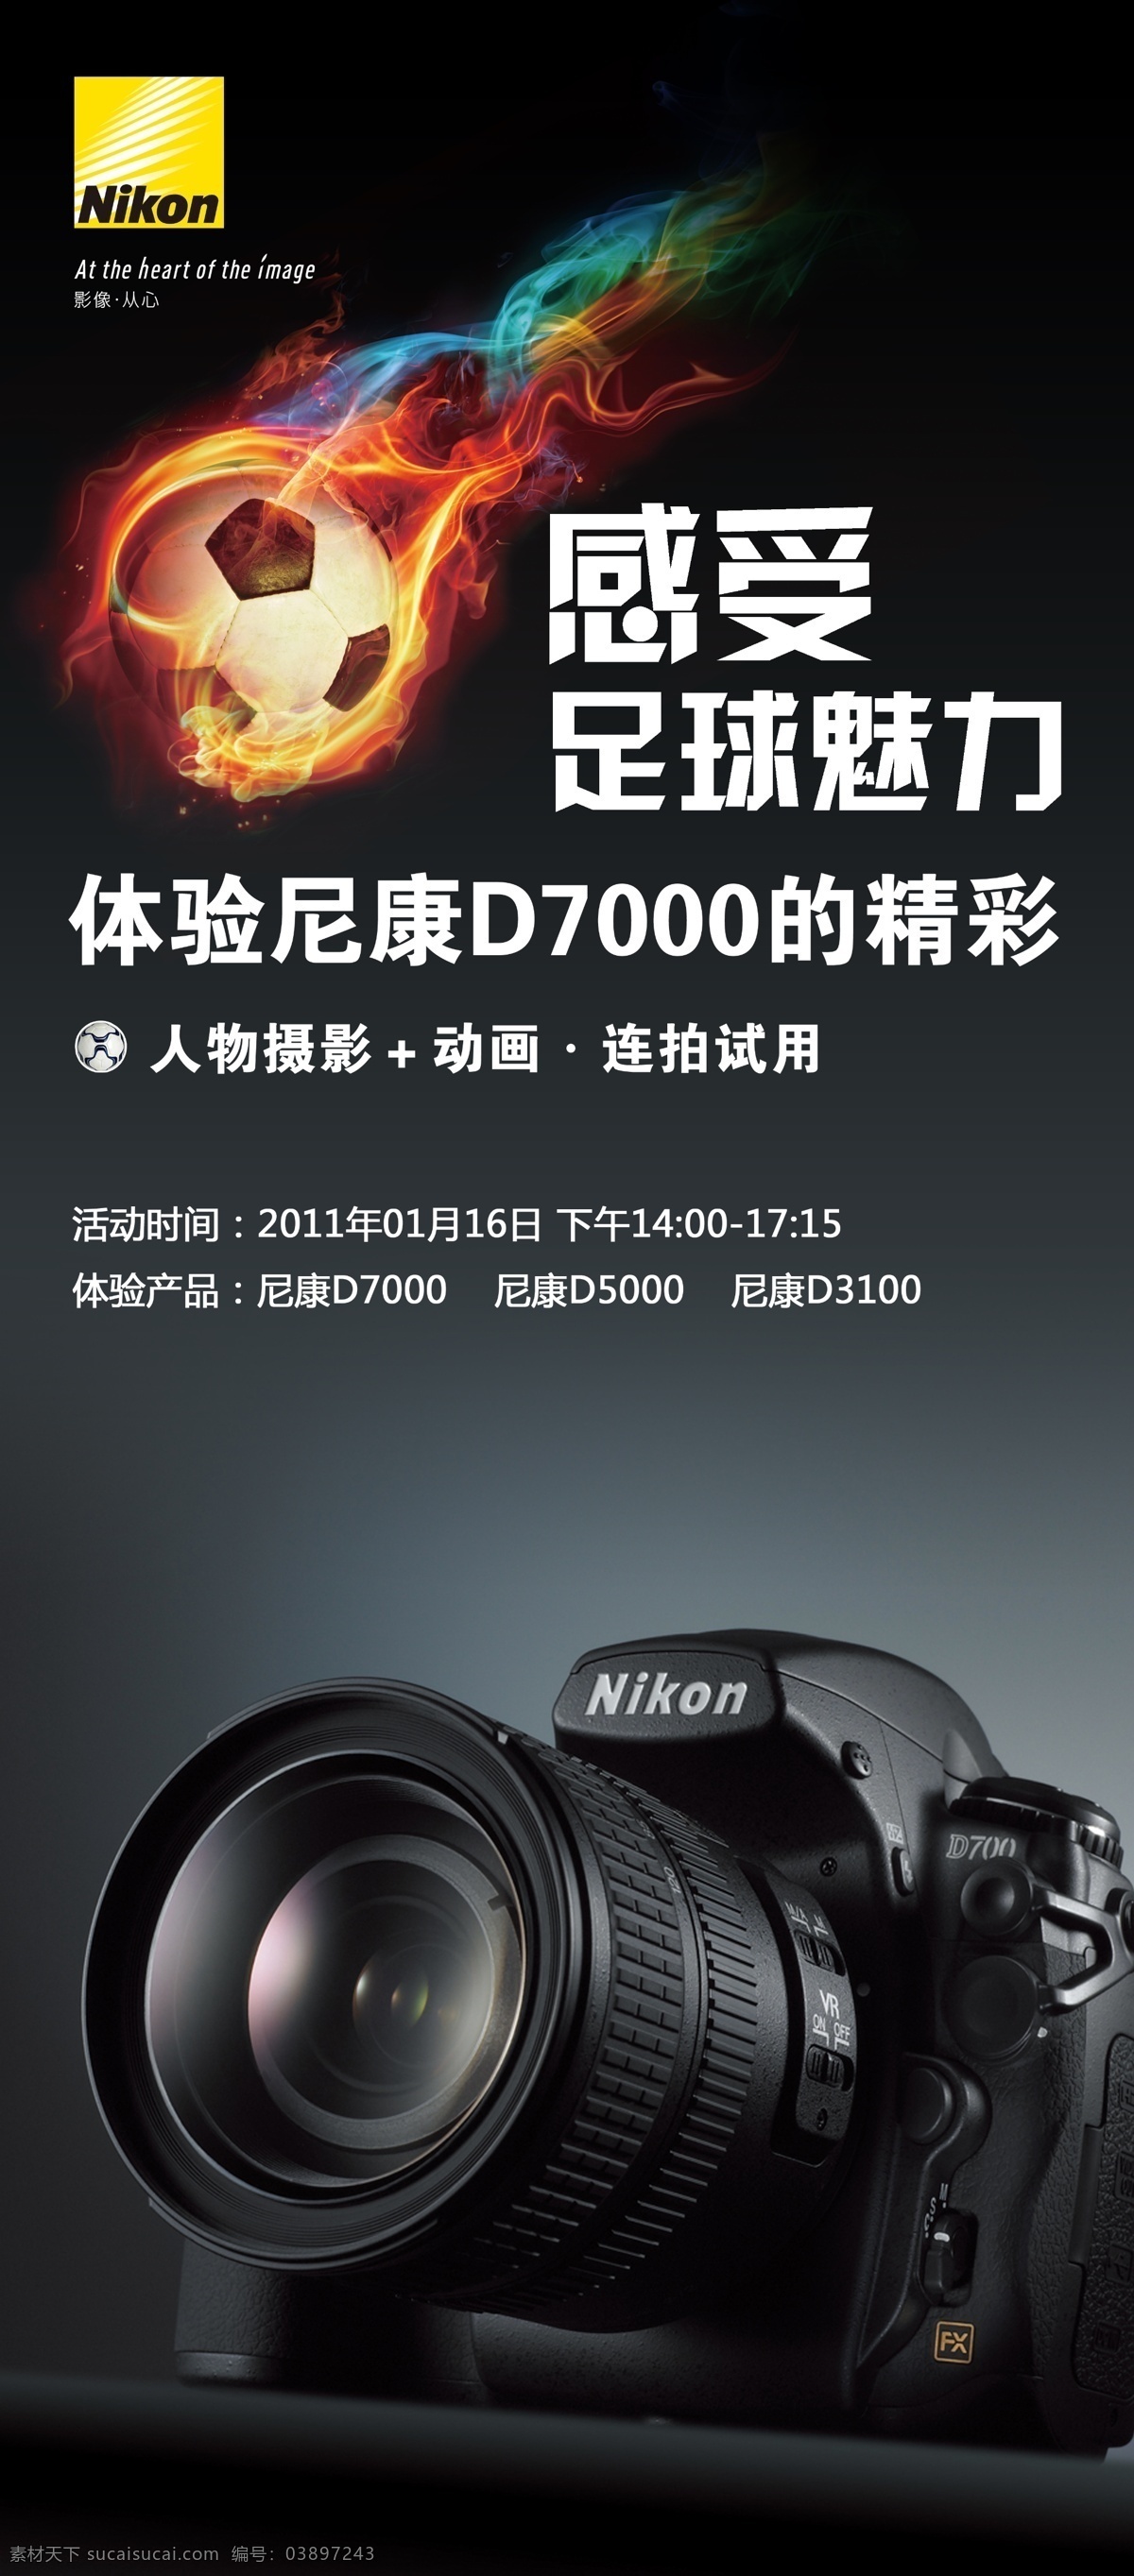 尼康 相机 易拉宝 尼康相机 x架 d700 尼康logo 足球 火焰 速度 激情 广告设计模板 源文件